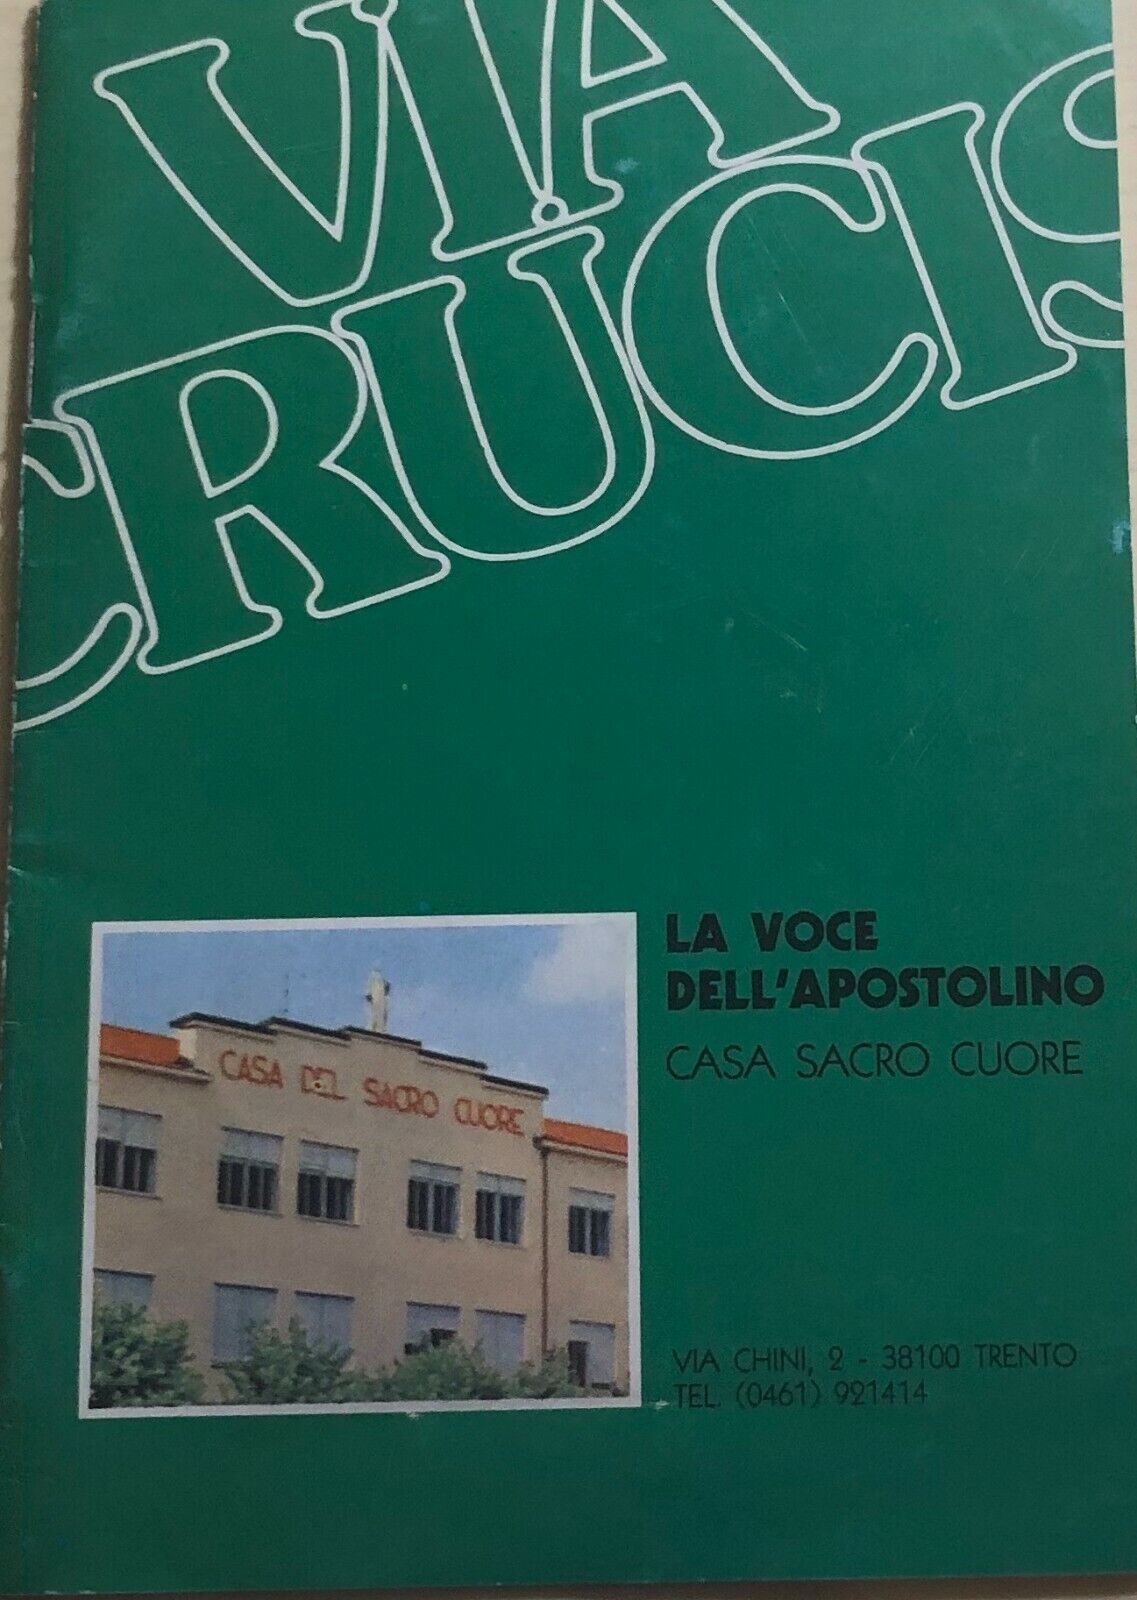 Via Crucis, La voce delL'Apostolino di Aa.vv., 1990, Casa Sacro Cuore